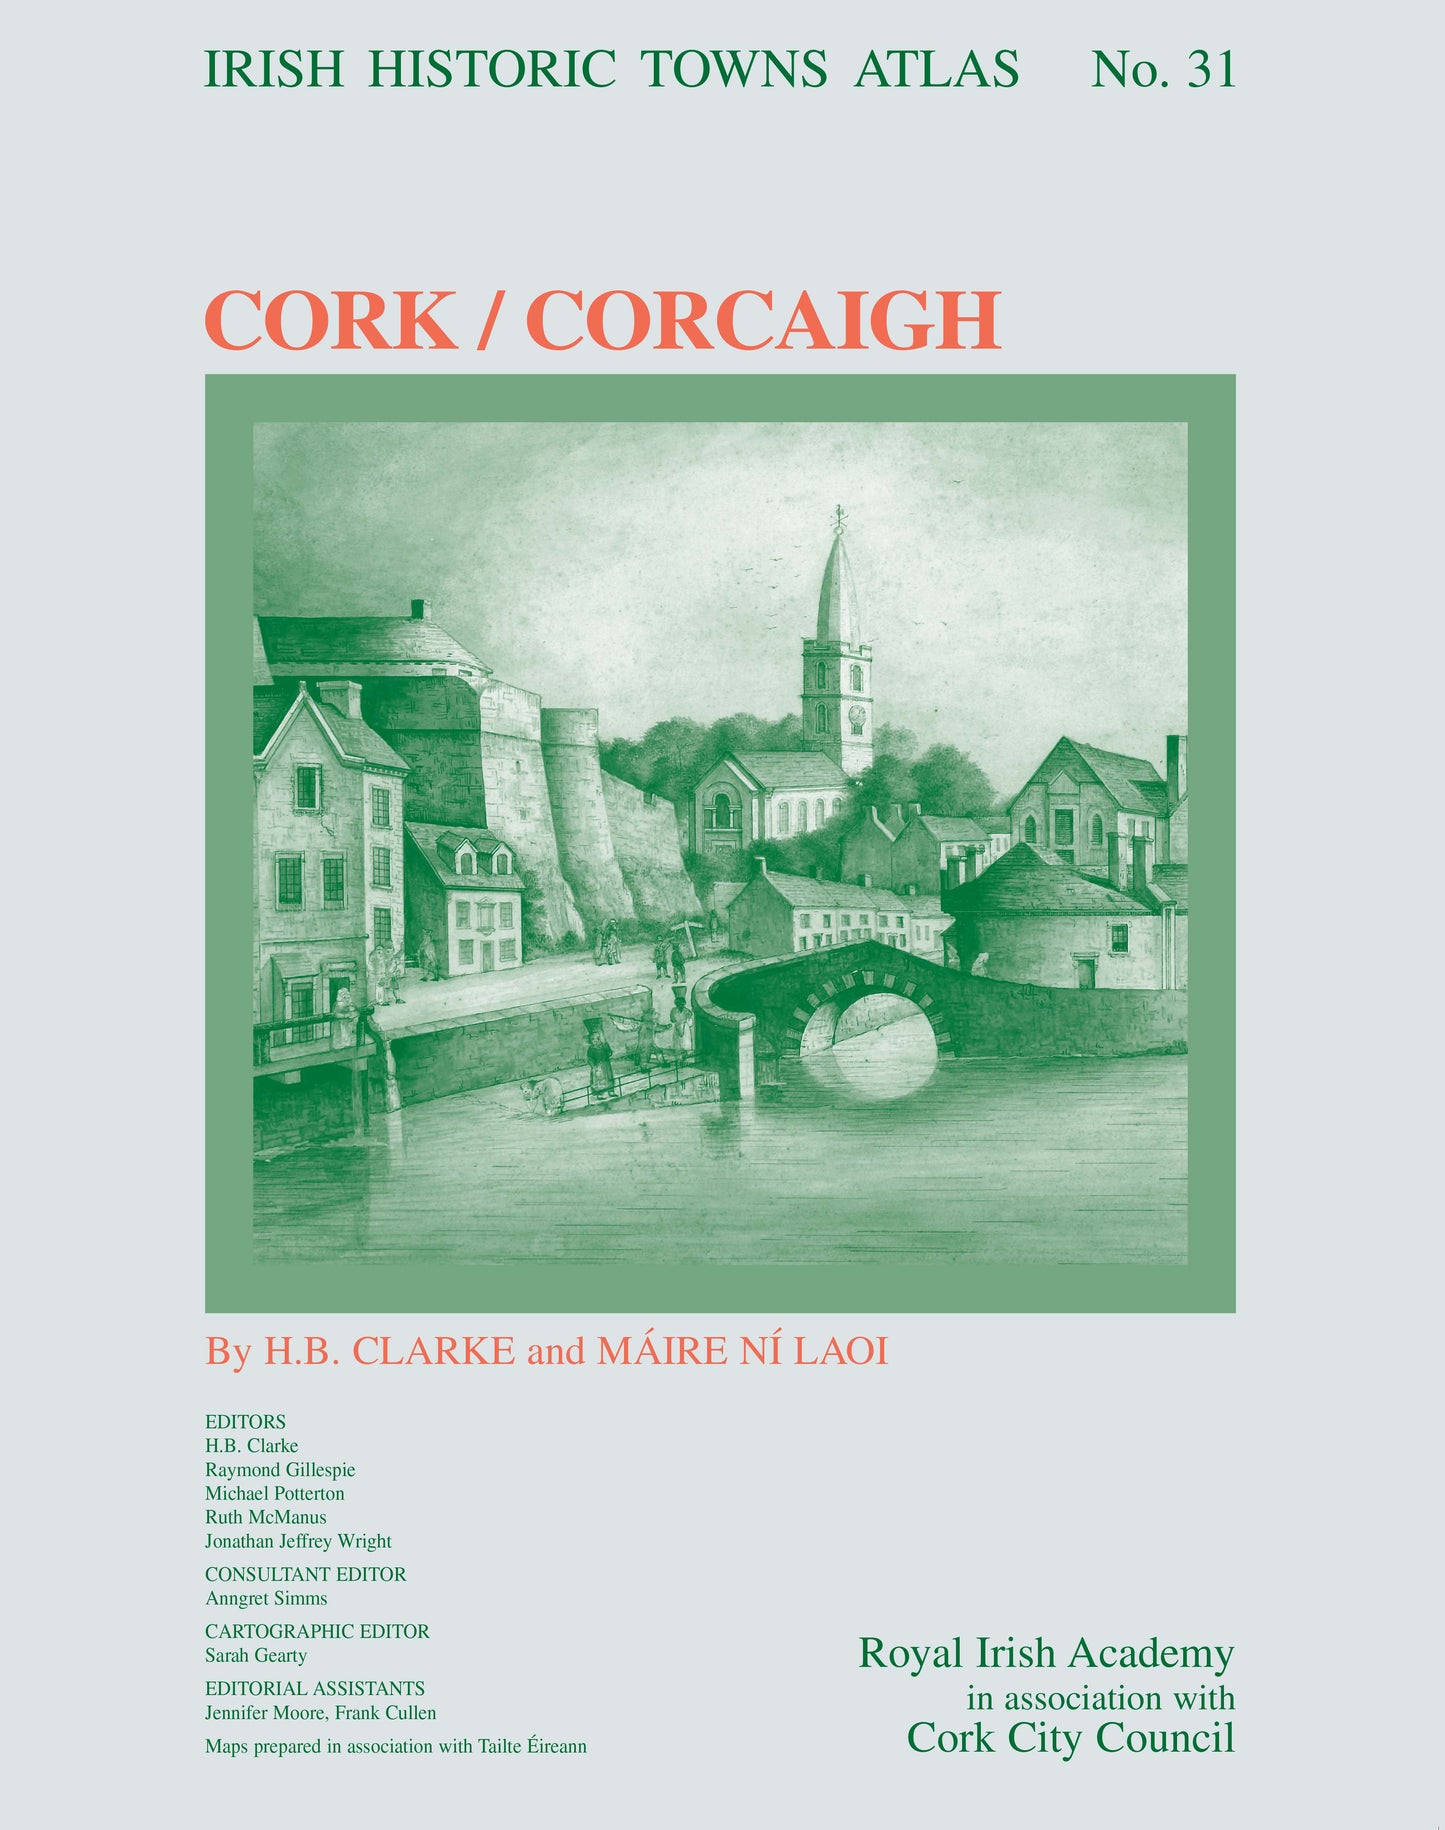 Cork/Corcaigh: Irish Historic Towns Atlas, no. 31